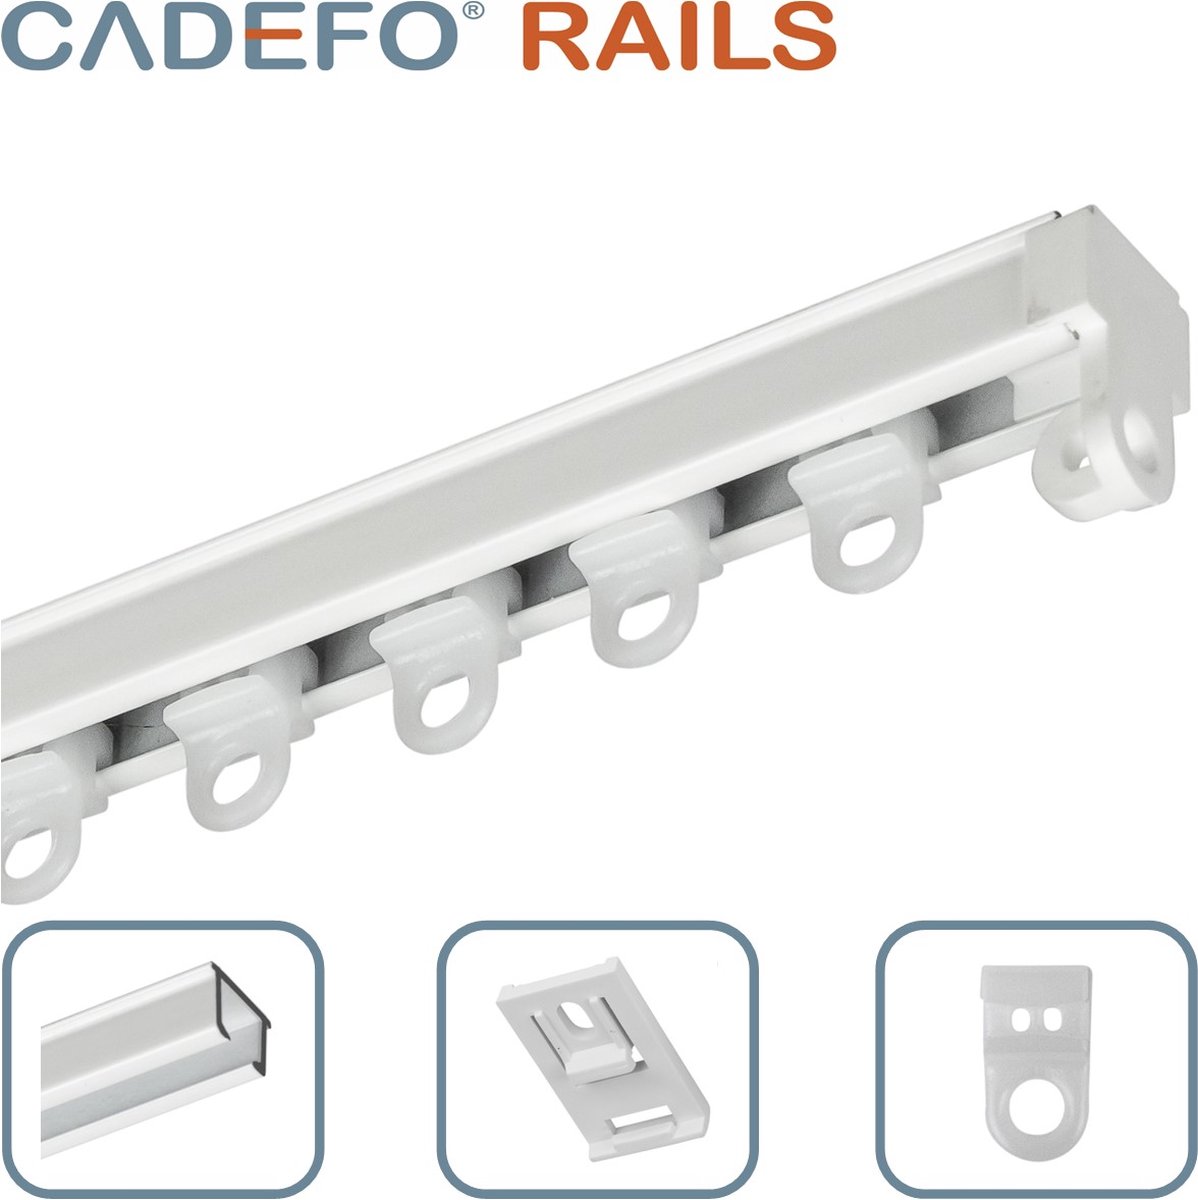 CADEFO RAILS (301 - 350 cm) Gordijnrails - Compleet op maat! - UIT 1 STUK - Leverbaar tot 6 meter - Plafondbevestiging - Lengte 303 cm